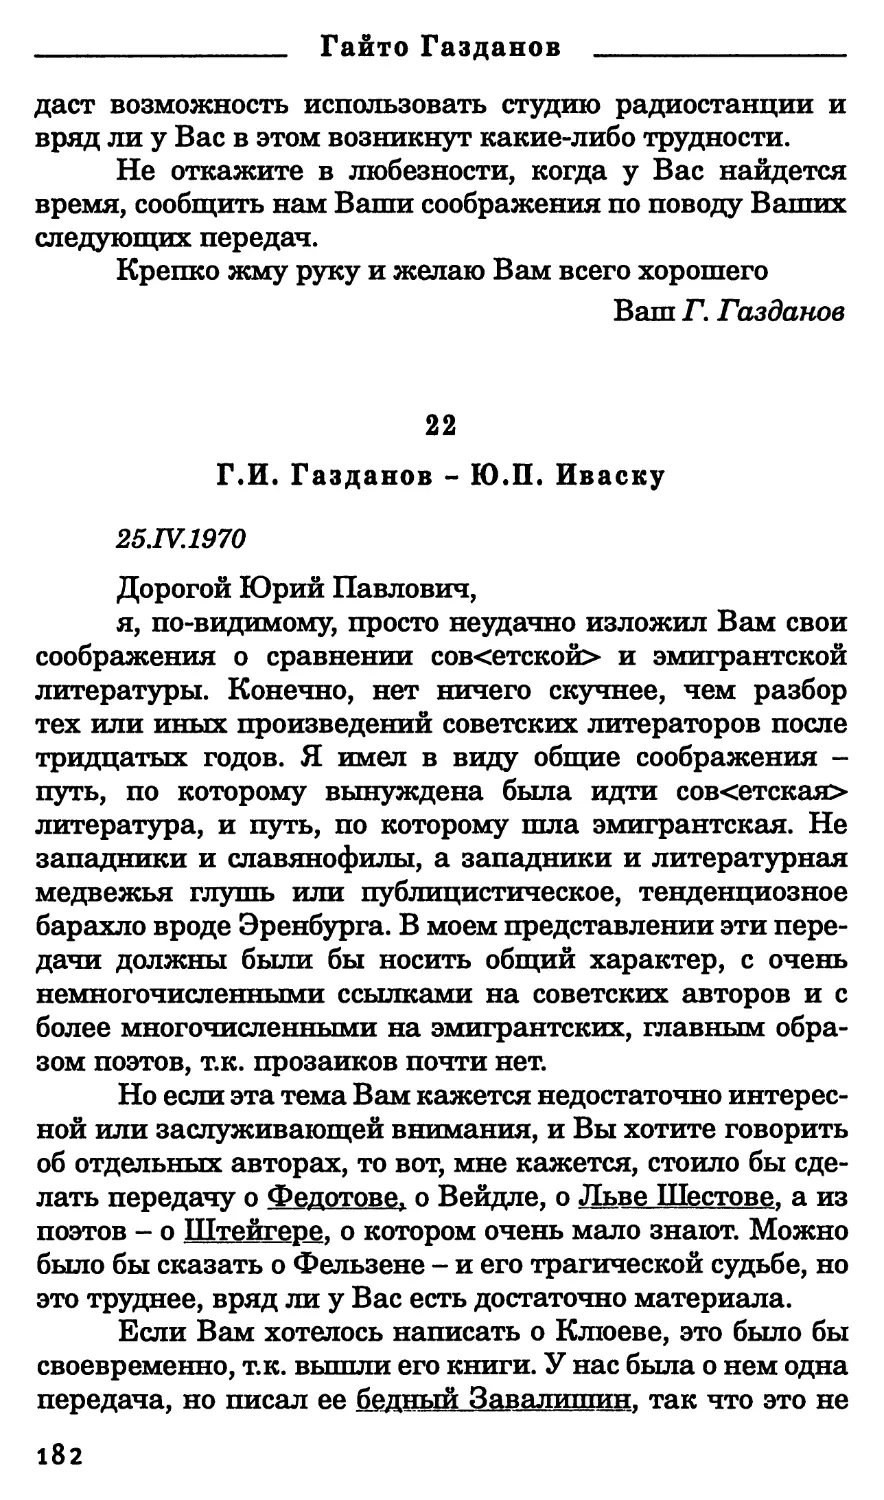 22. Г.И. Газданов - Ю.П. Иваску. 25 апреля 1970 г.